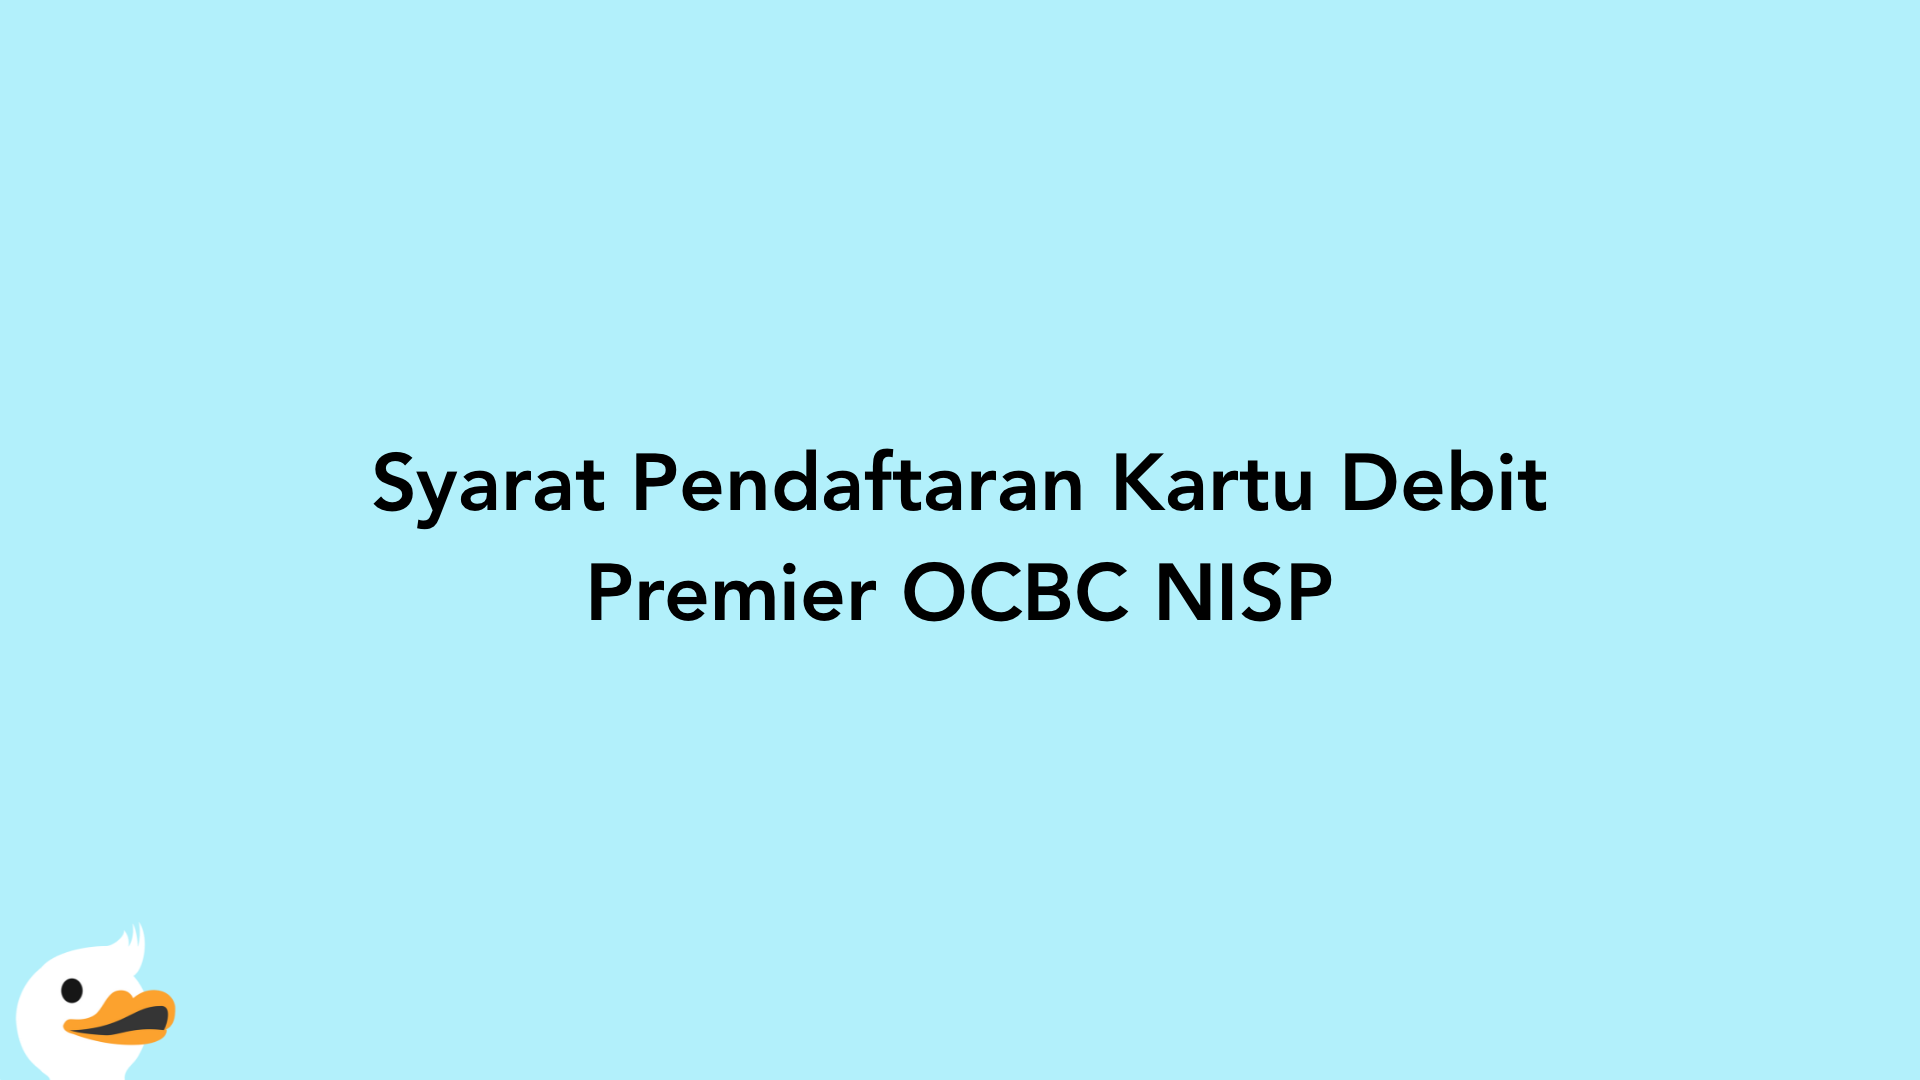 Syarat Pendaftaran Kartu Debit Premier OCBC NISP